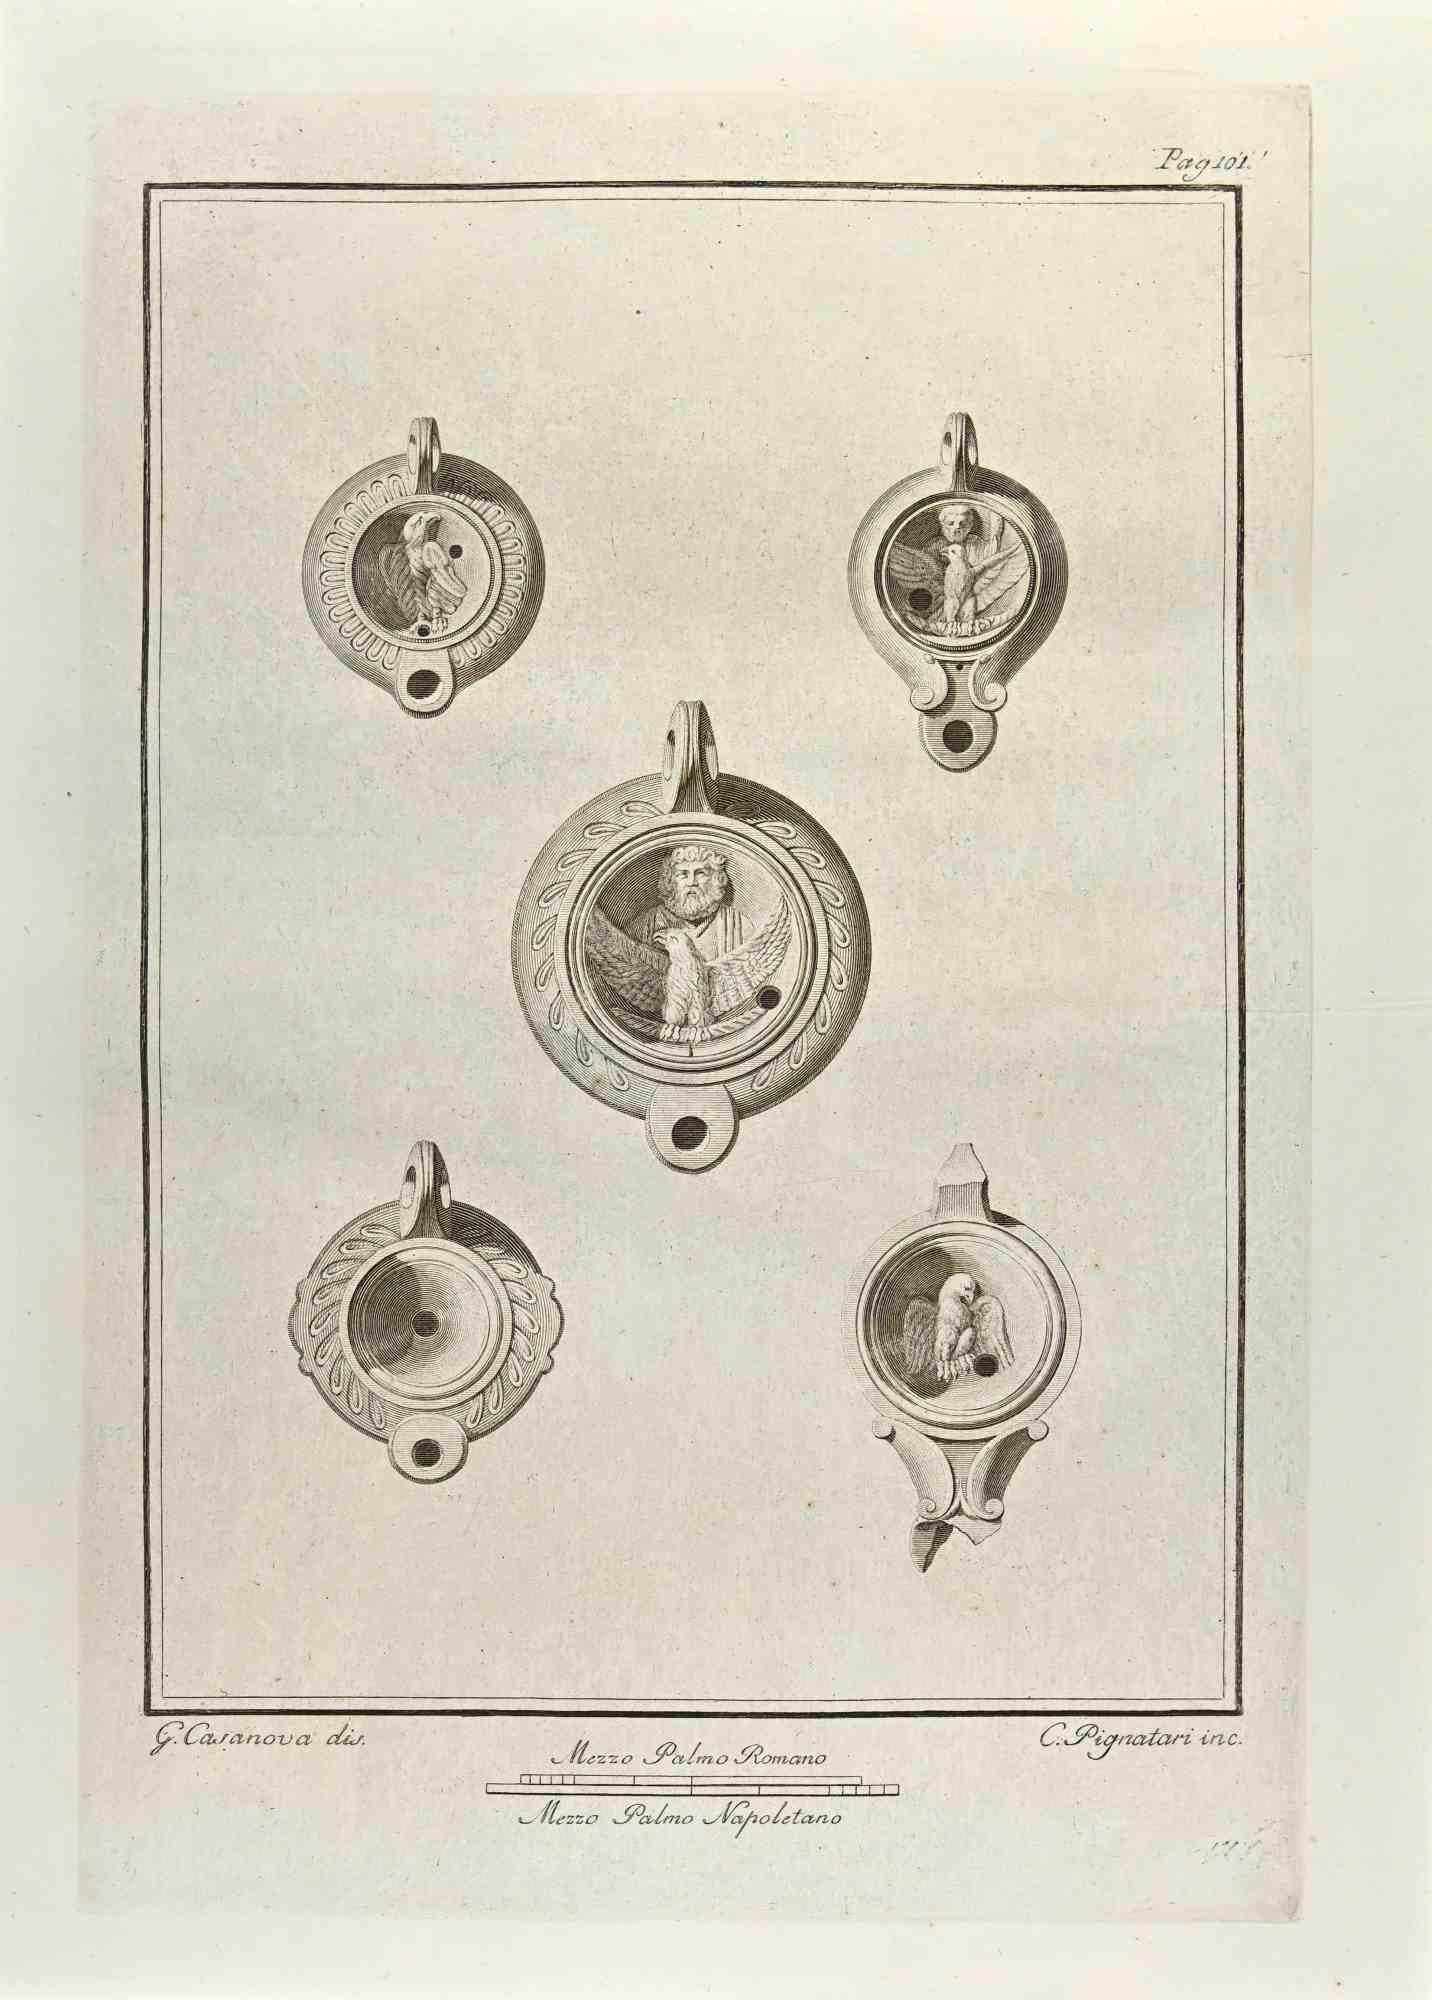 Jupiter und Heiliger Adler Ein  Die Öllampe aus den "Altertümern von Herculaneum" ist eine Radierung auf Papier von Carlo Pignatari aus dem 18. Jahrhundert.

Signiert auf der Platte.

Gute Bedingungen.

Die Radierung gehört zu der Druckserie